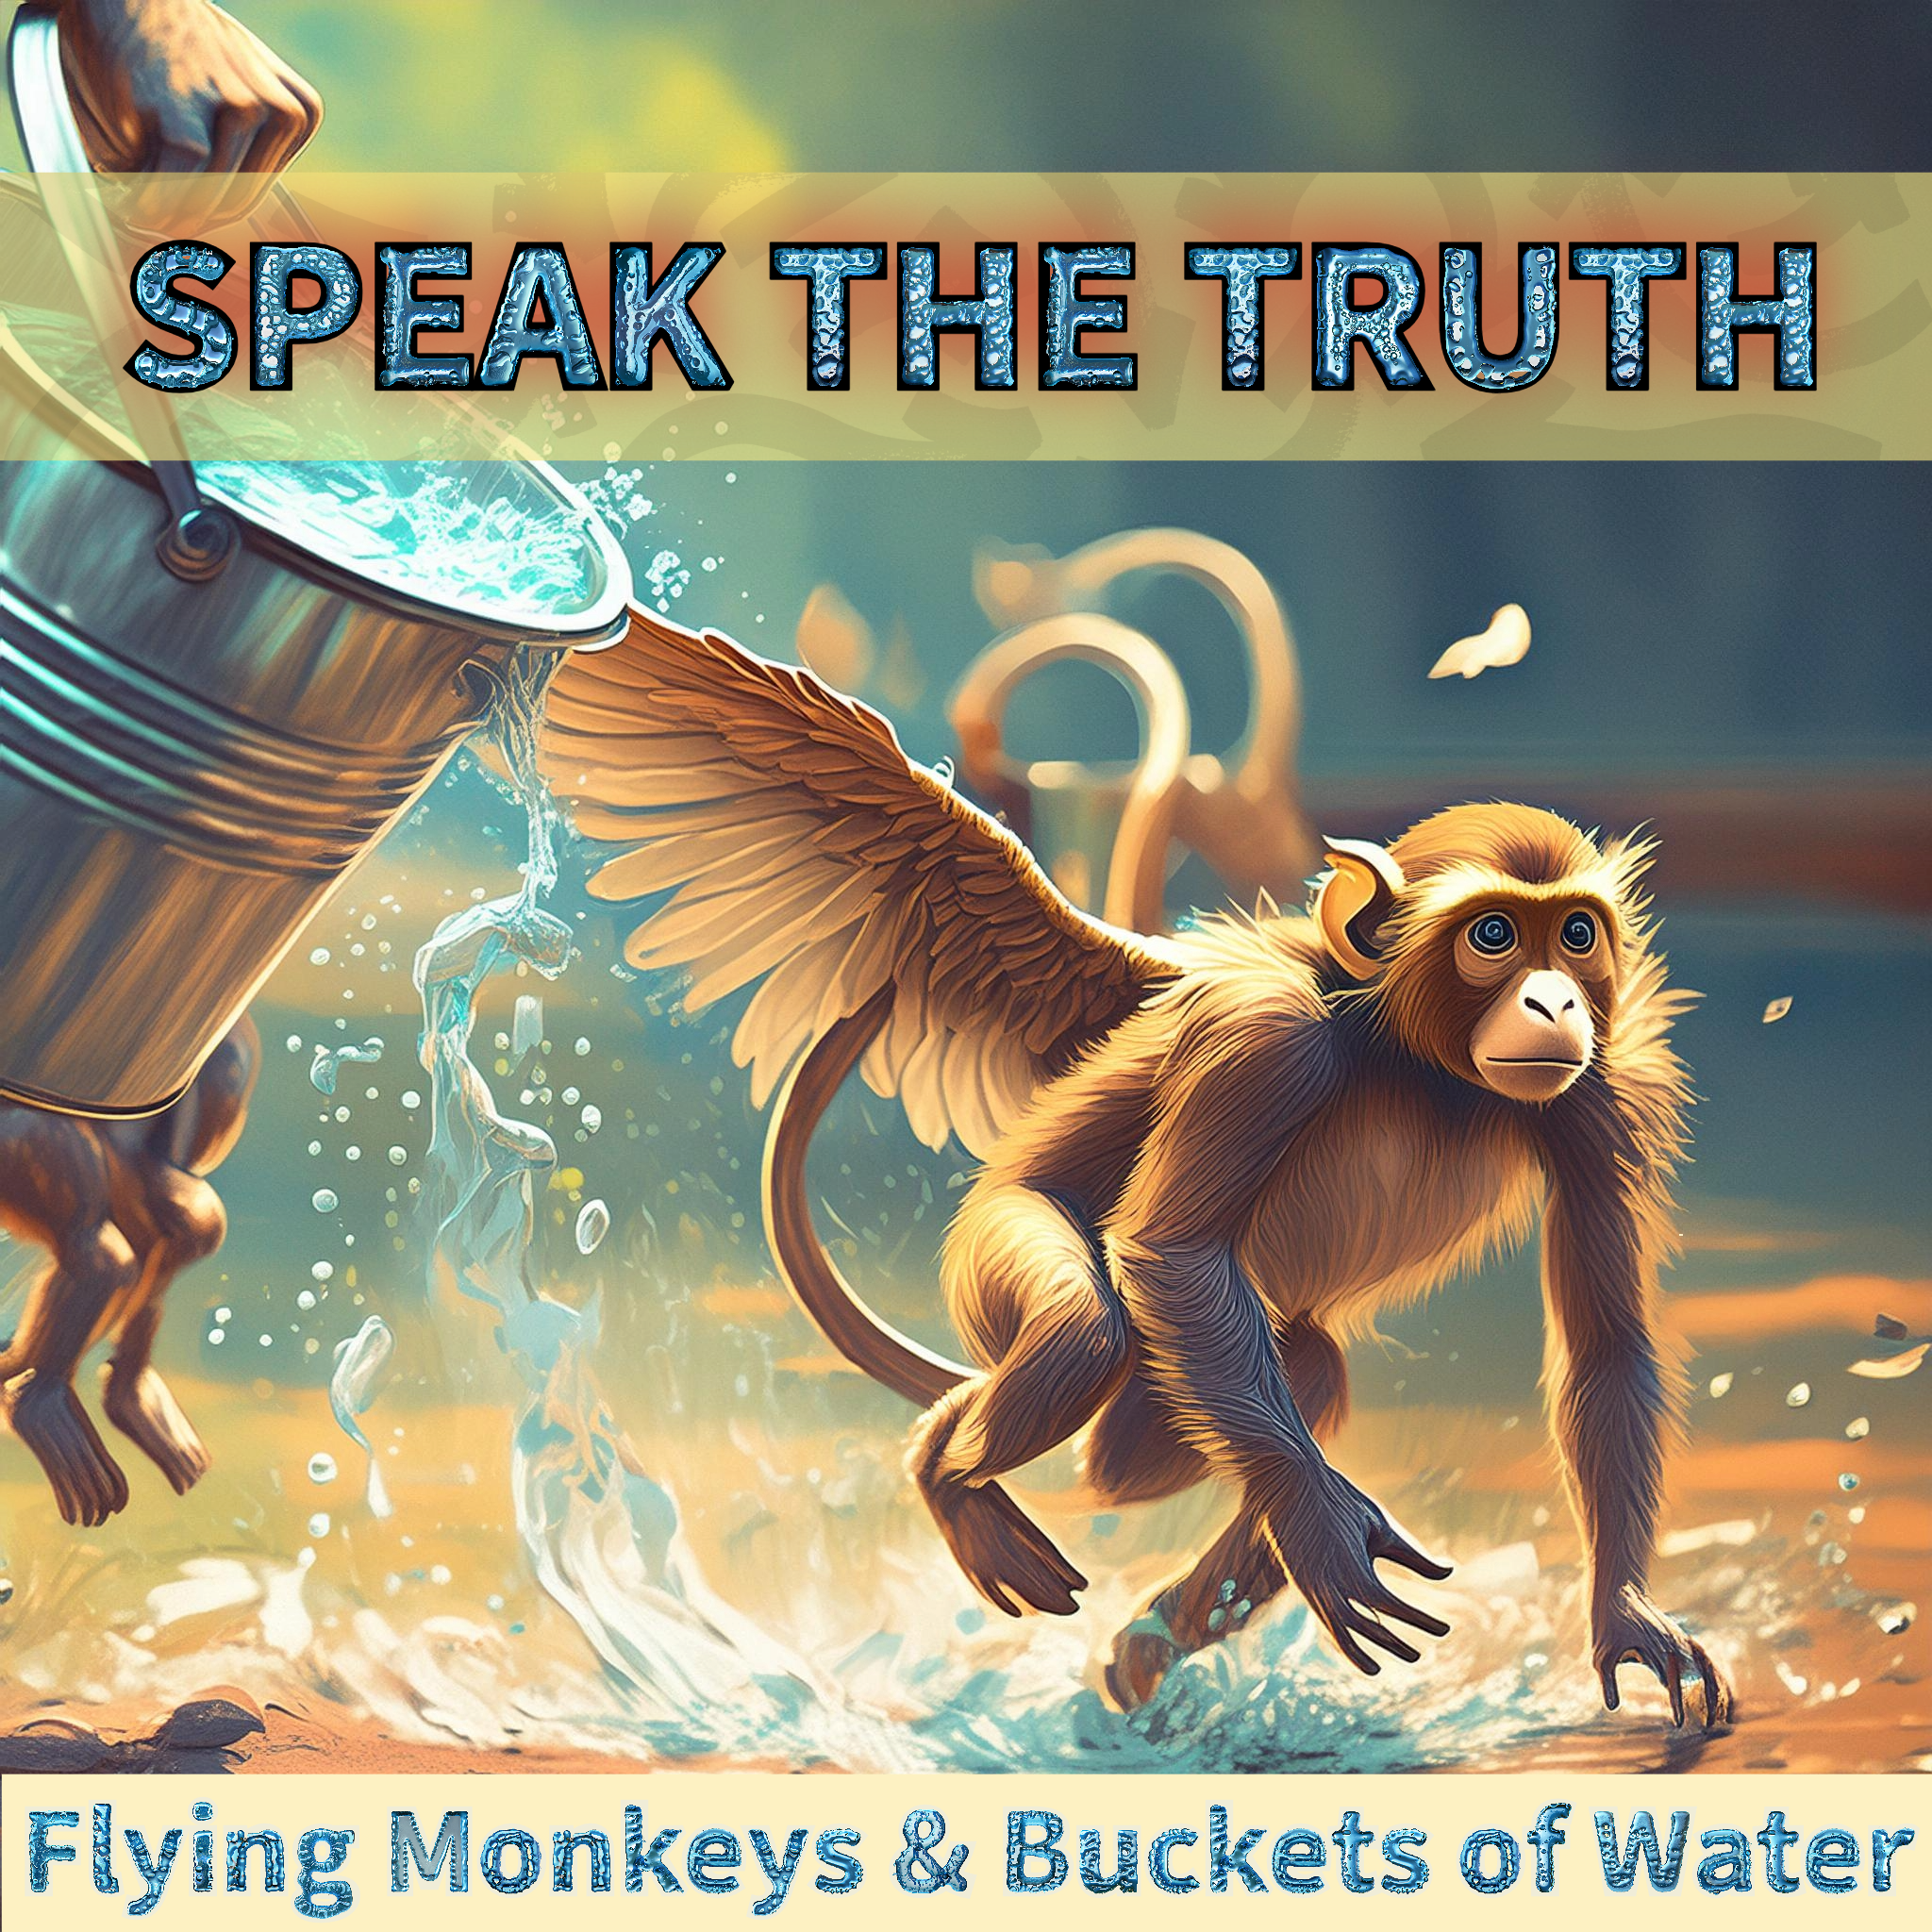 Flying Monkeys & Bucket of Water #2 -  Speak the Truth